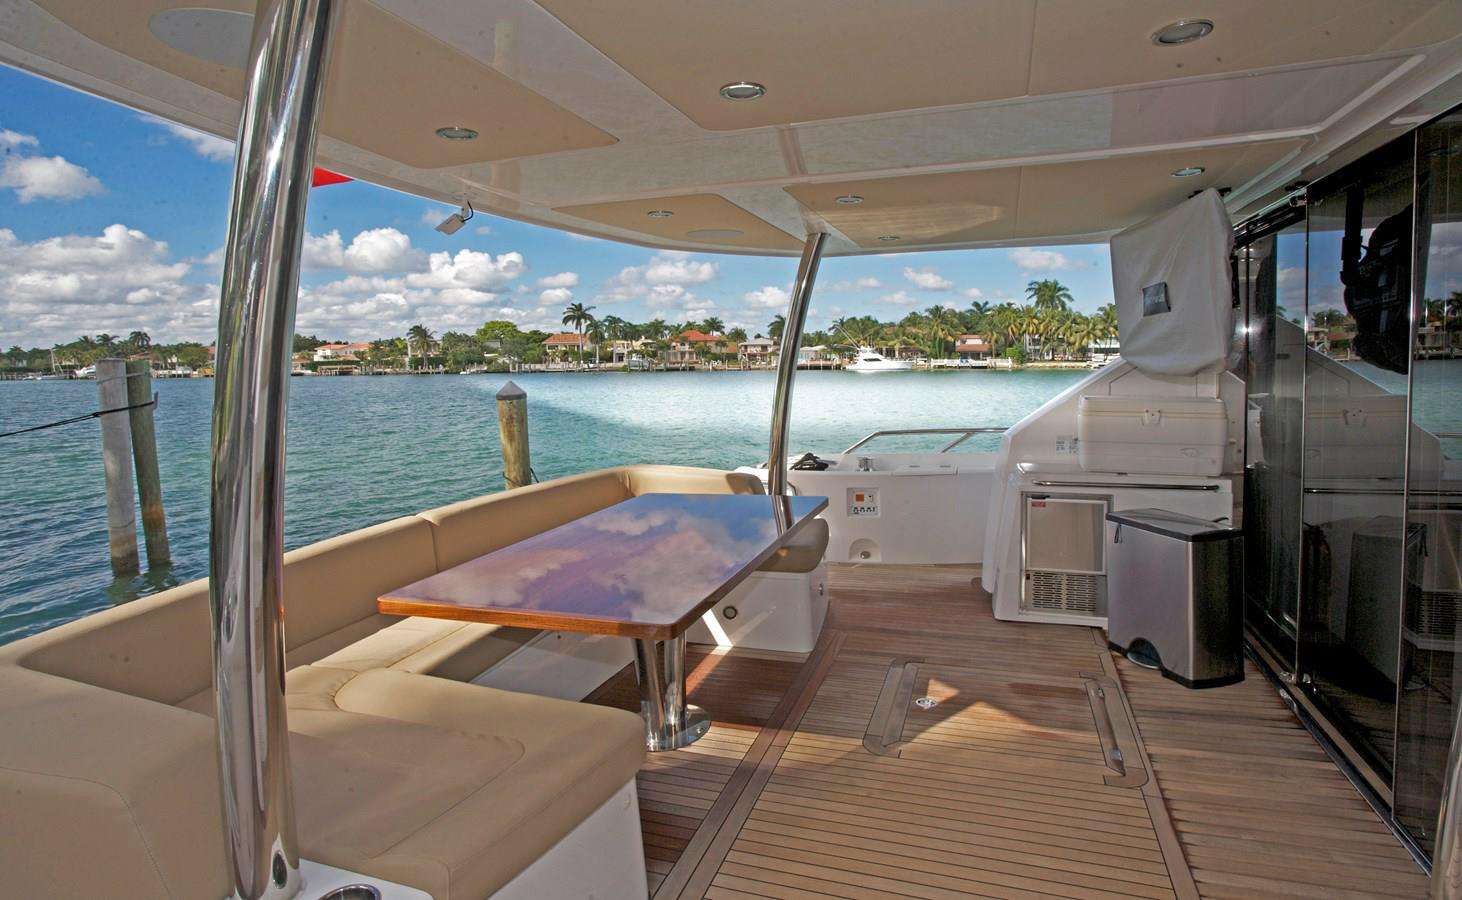 BORN TO RUN - Yacht Charter Miami & Boat hire in US East Coast & Bahamas 4